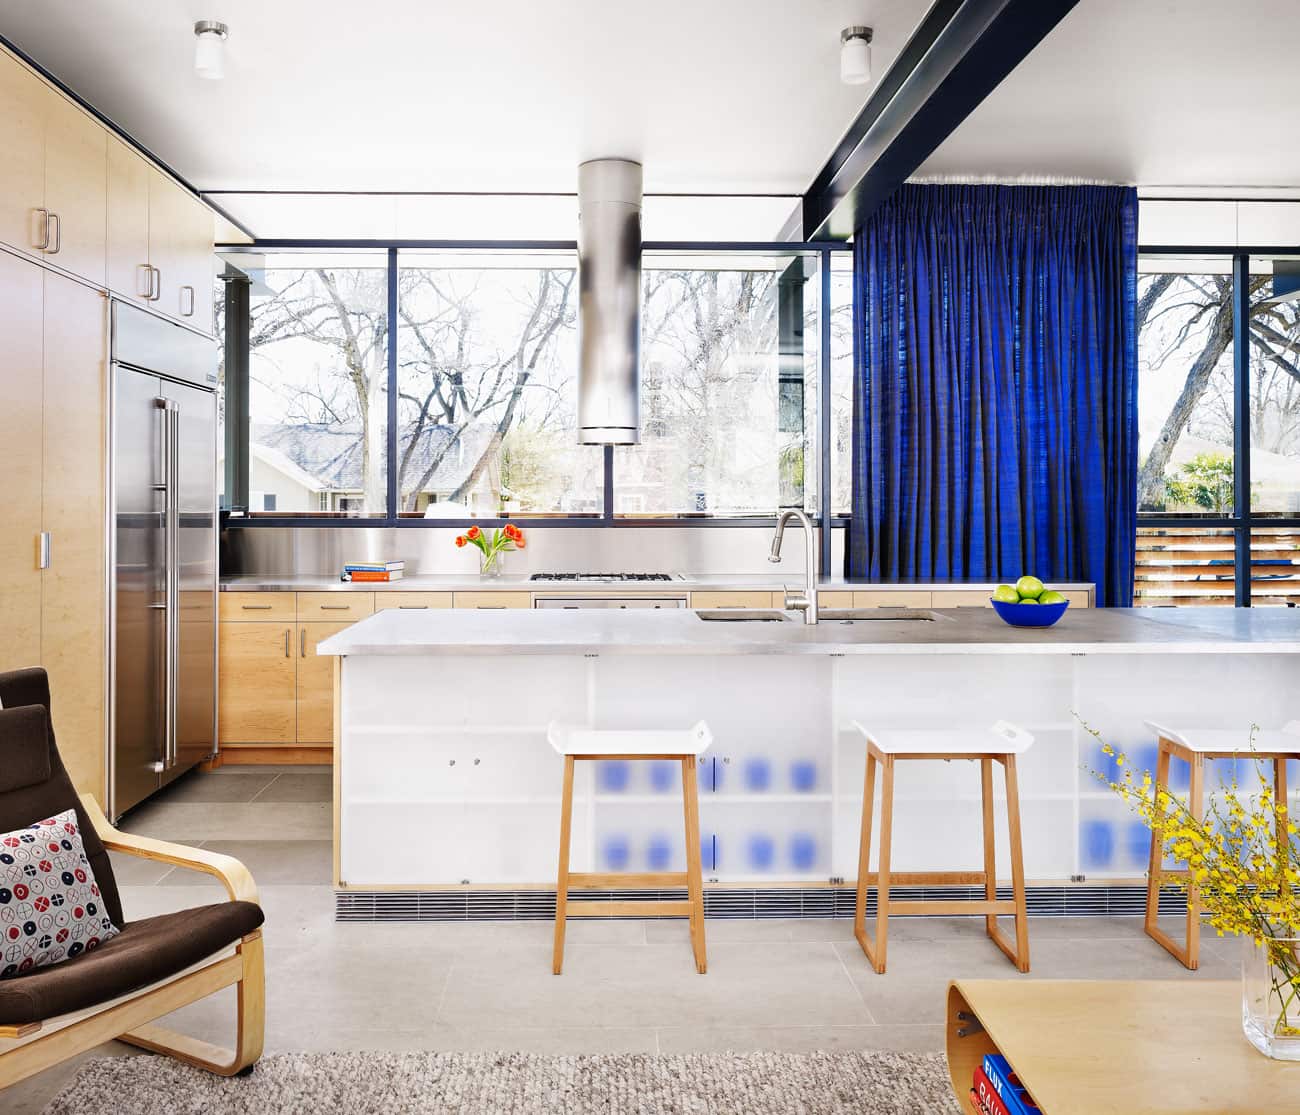 Mohle House by Baldridge Architects - kitchen